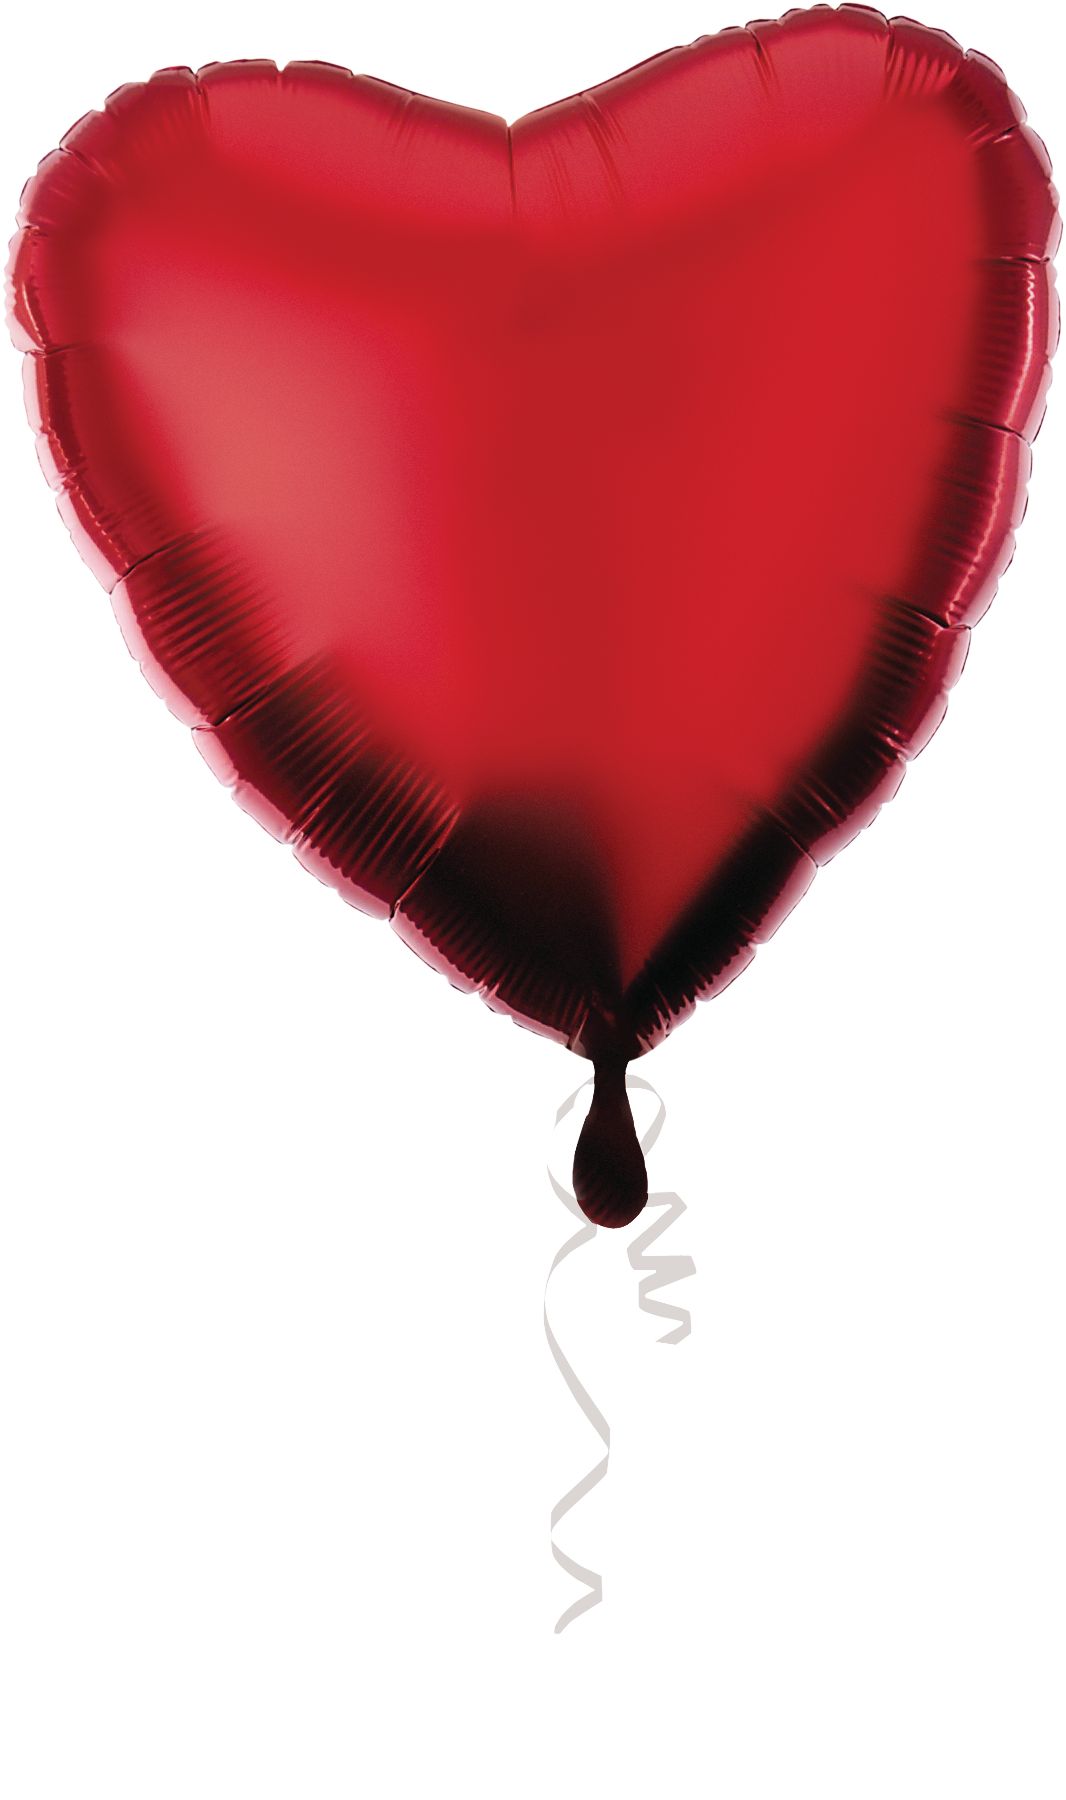 Le Ballon Coeur rouge gonflé à l'hélium - Canard